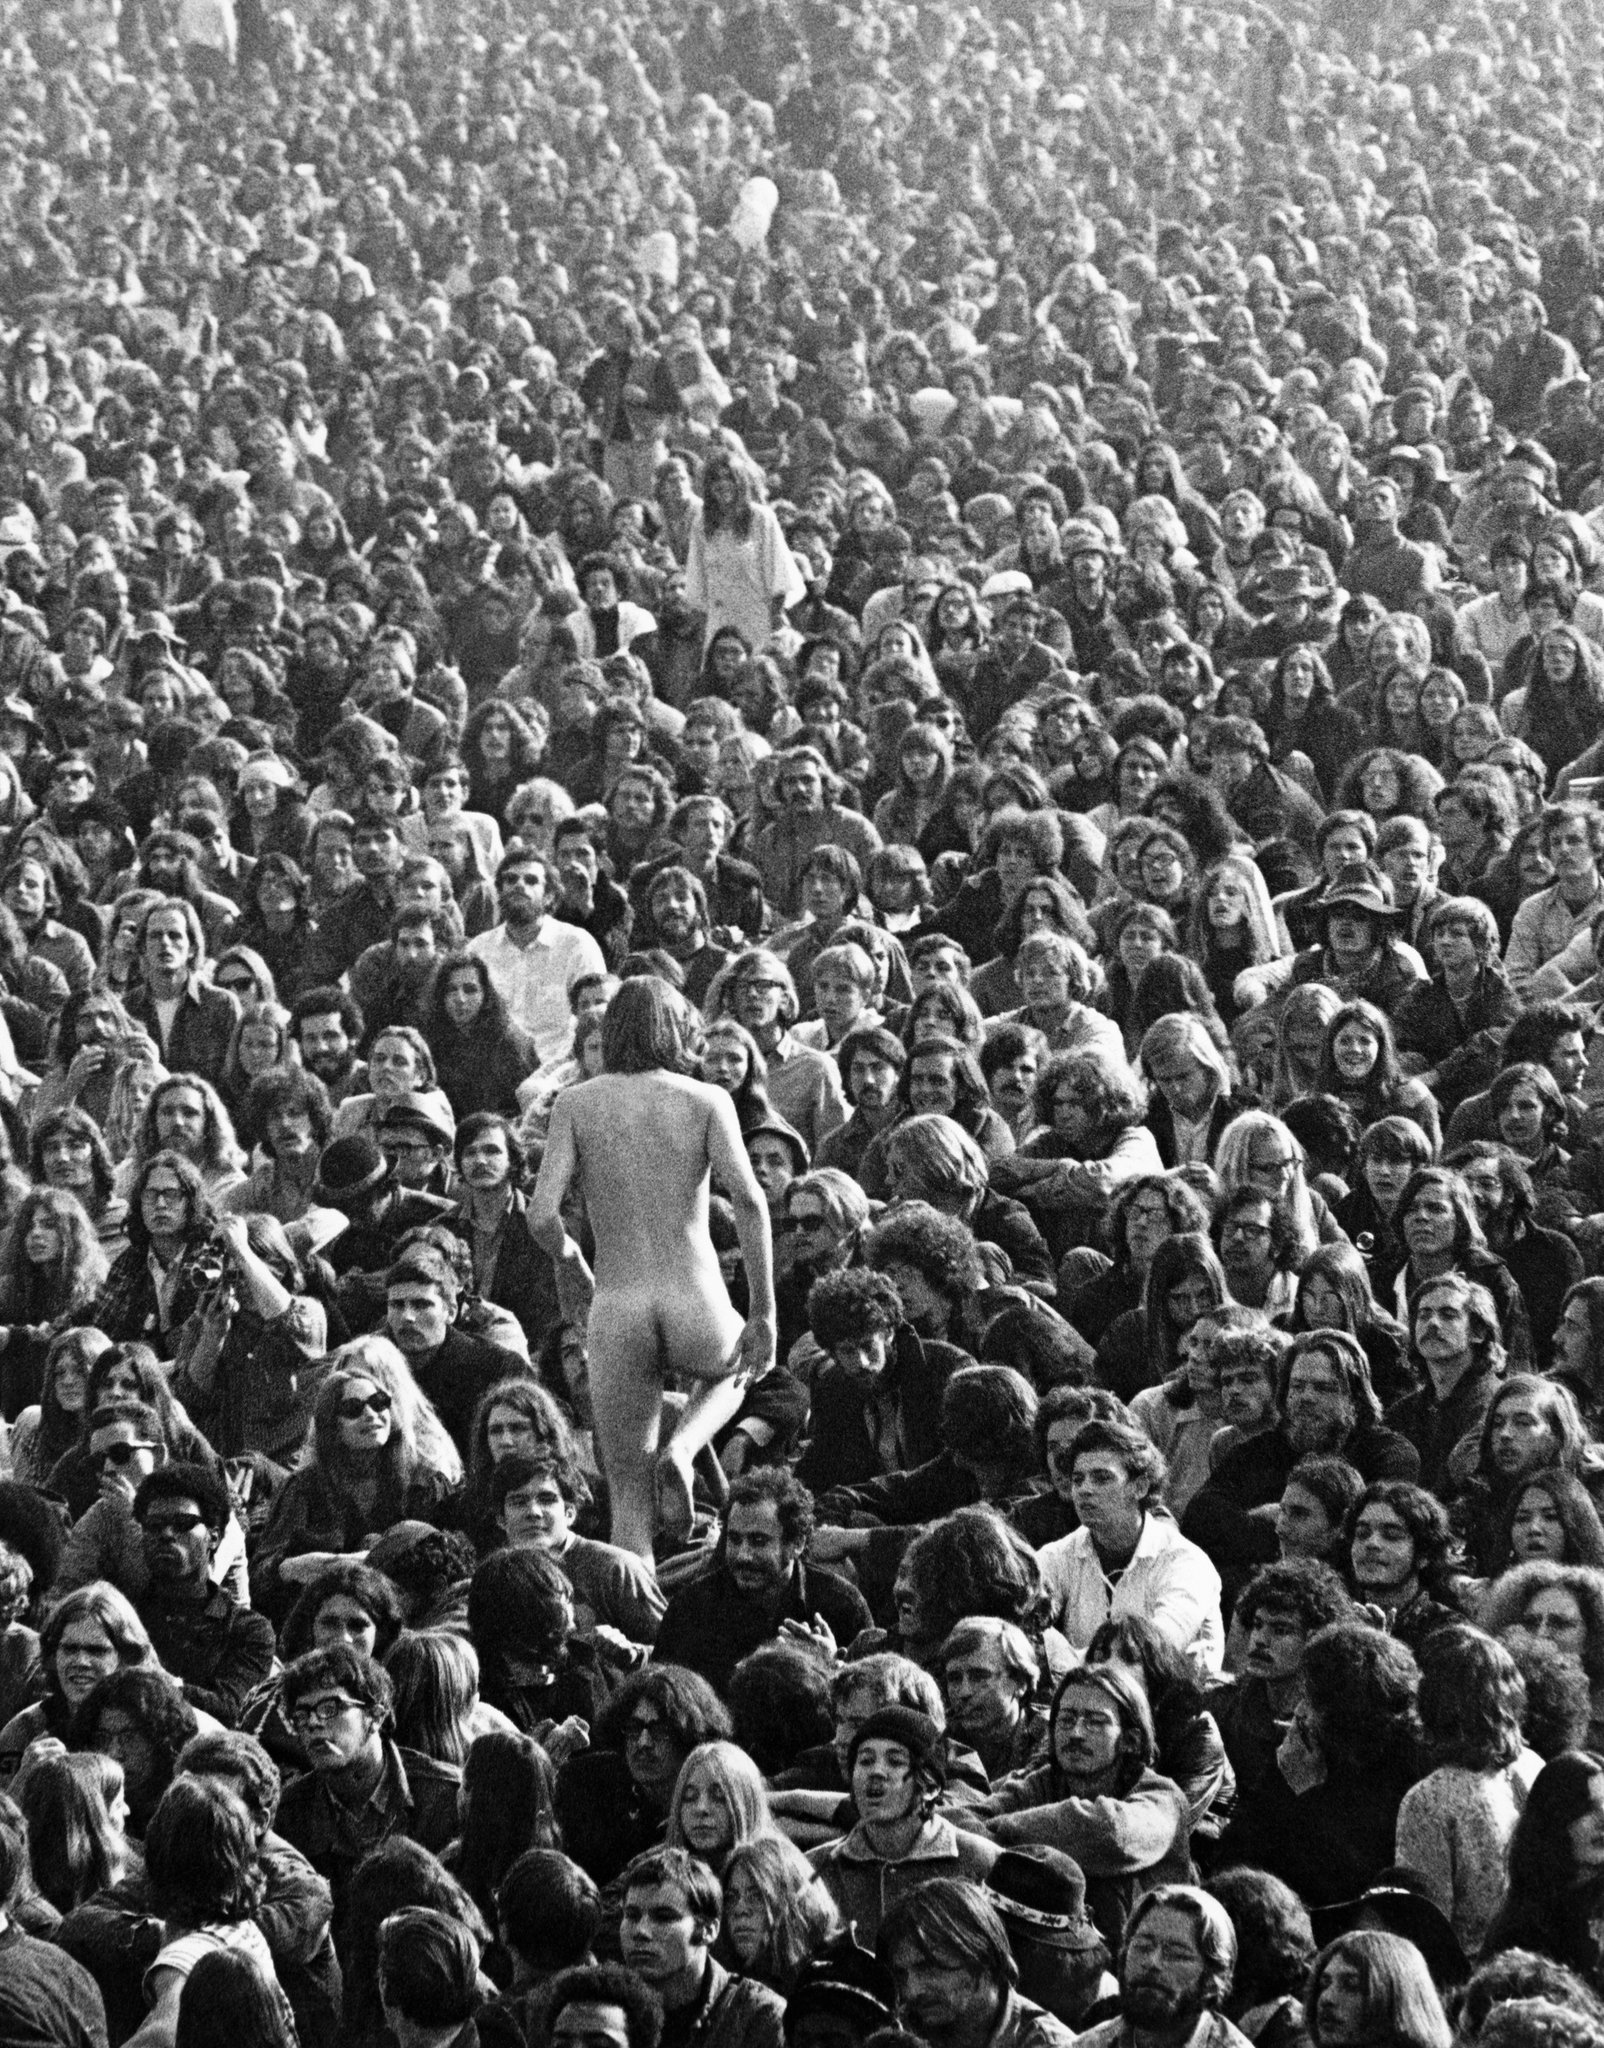 burung biru recommends Woodstock Nude Images